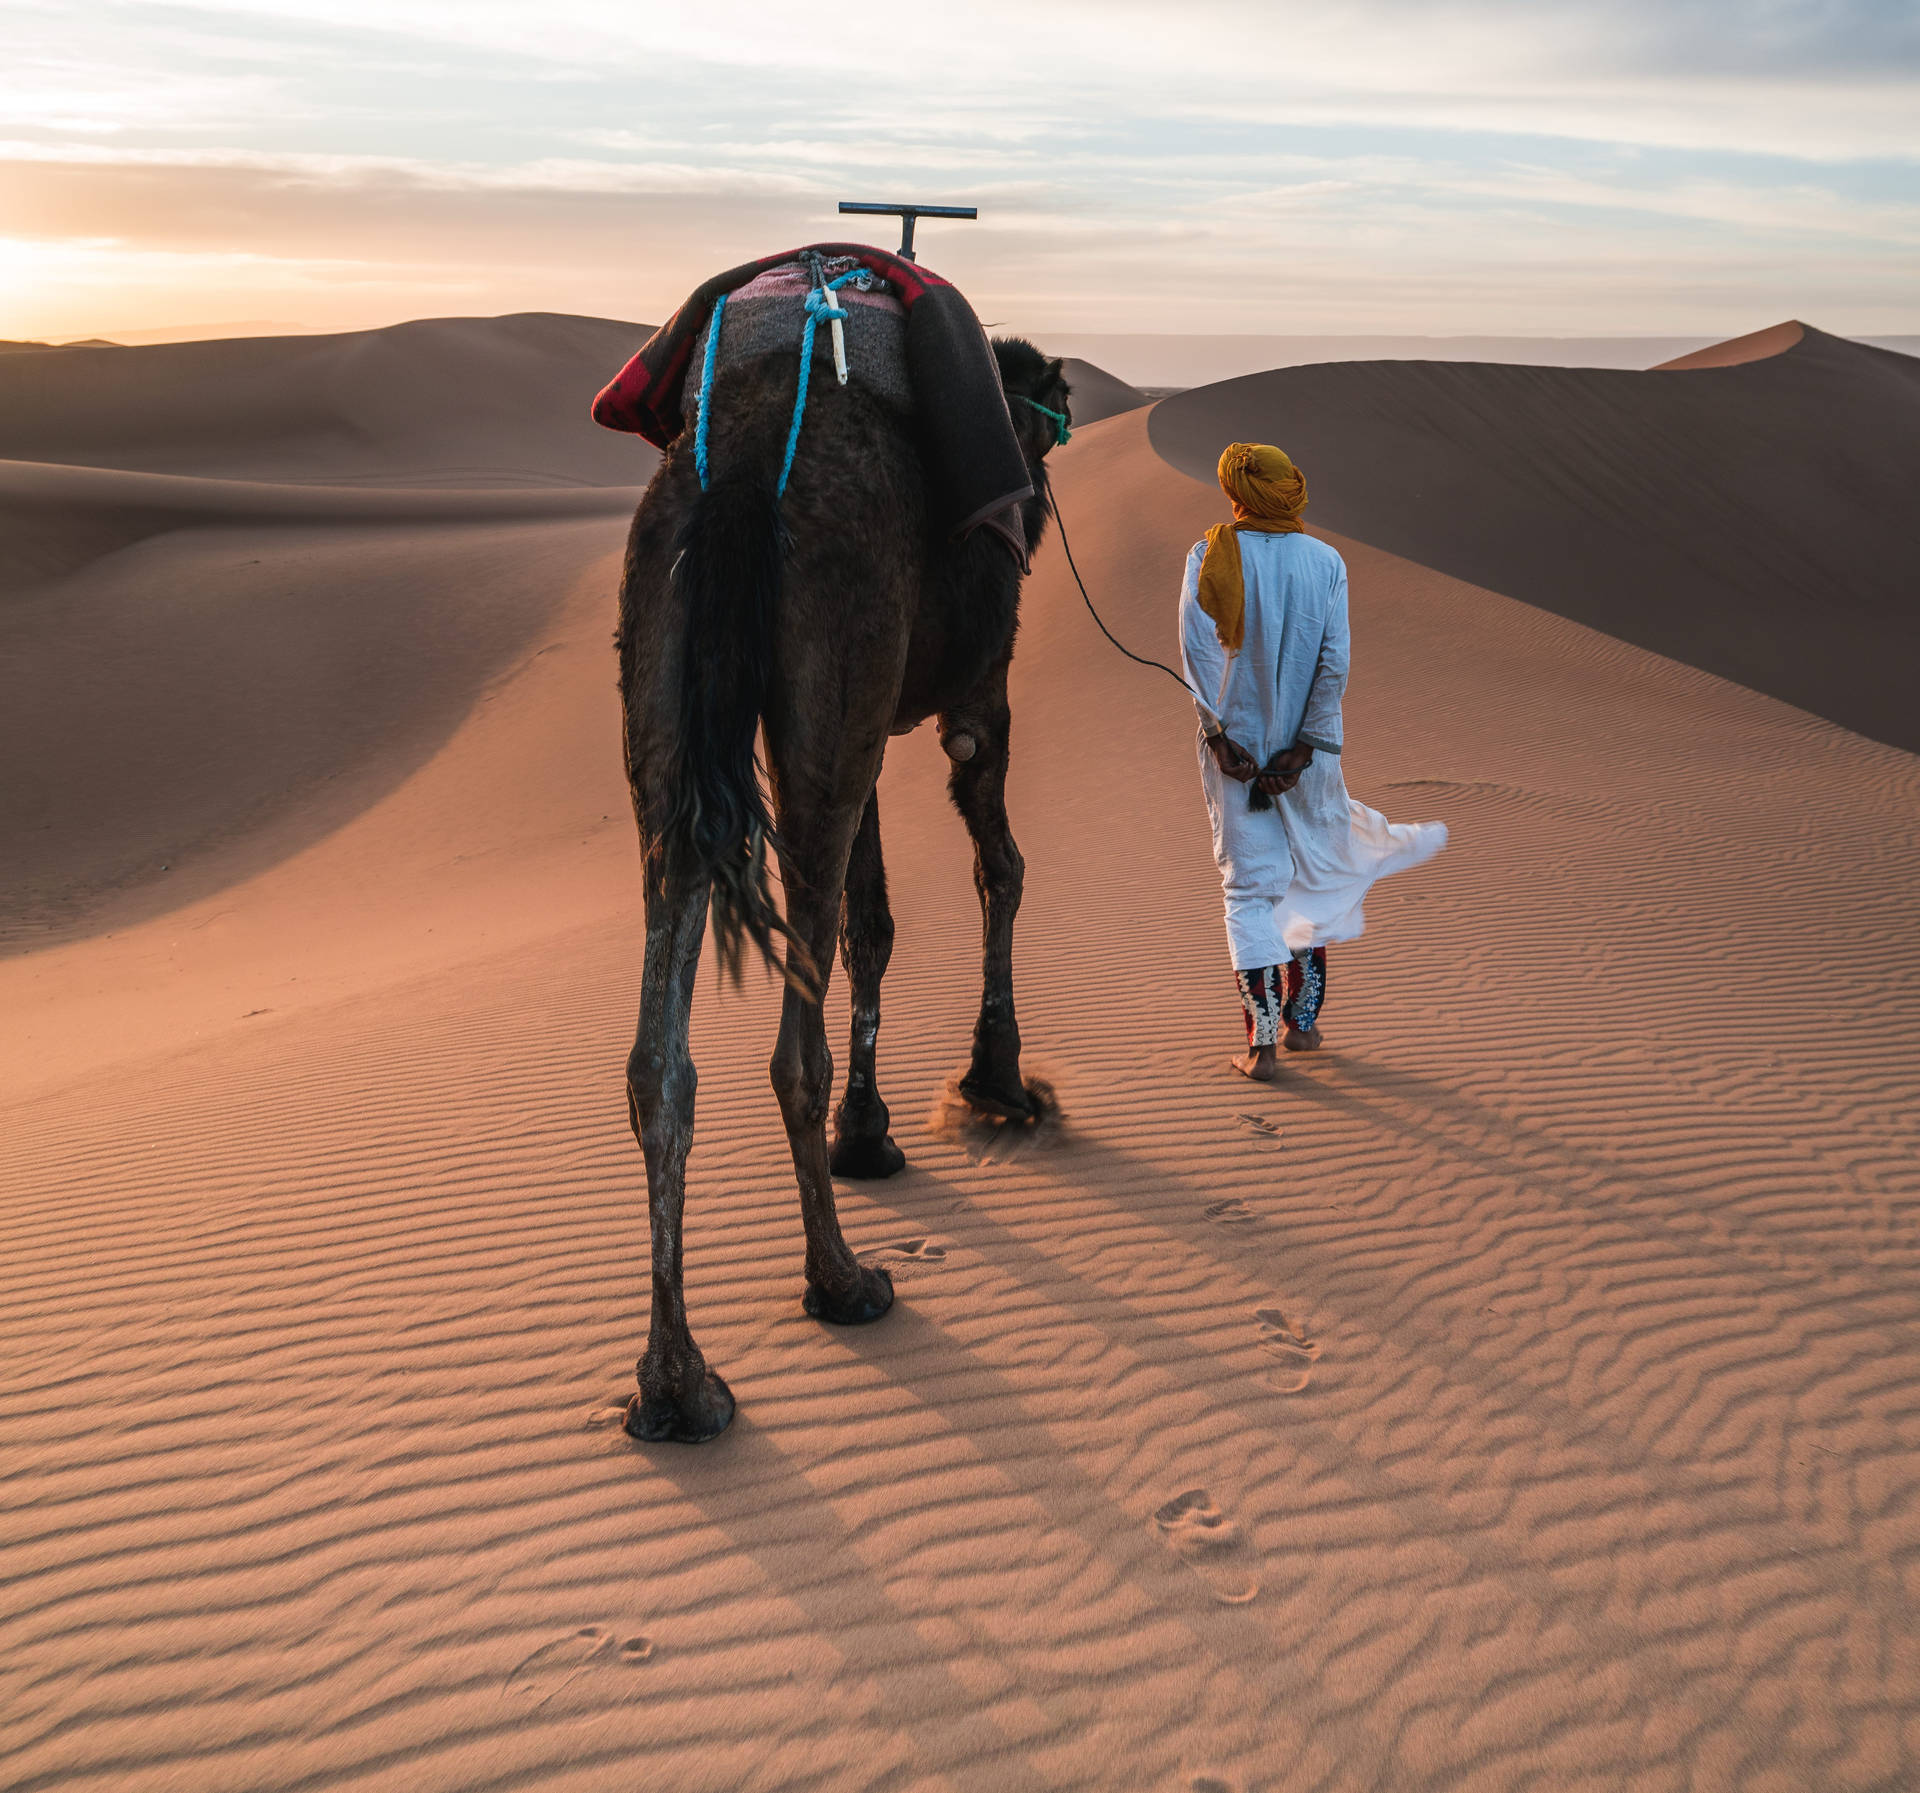 Morocco Desert Camel Wallpaper